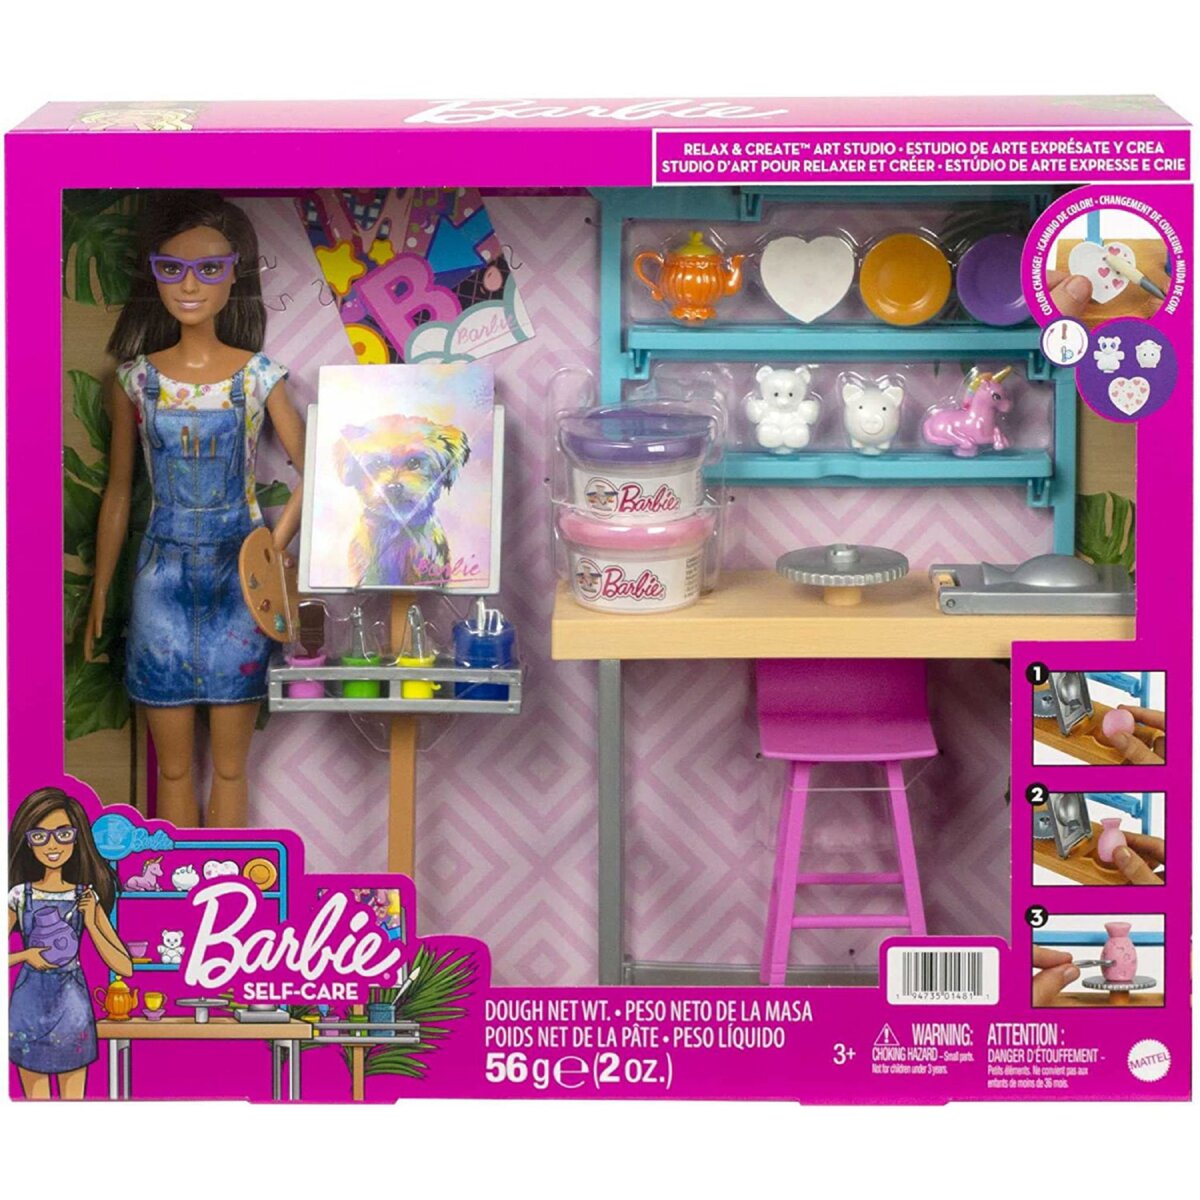 MATTEL Coffret poupée Barbie artistique + Accessoires